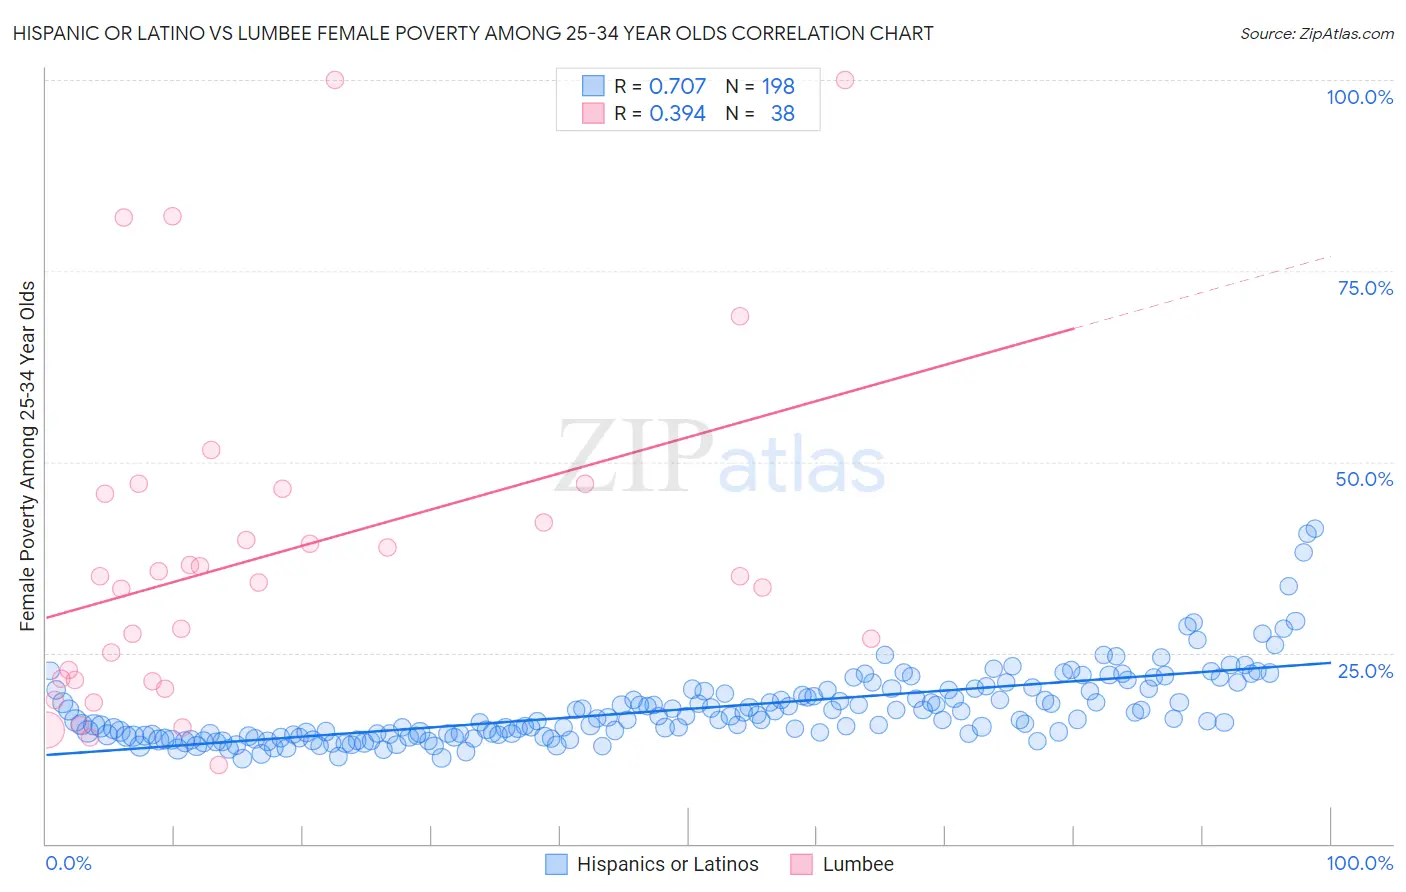 Hispanic or Latino vs Lumbee Female Poverty Among 25-34 Year Olds